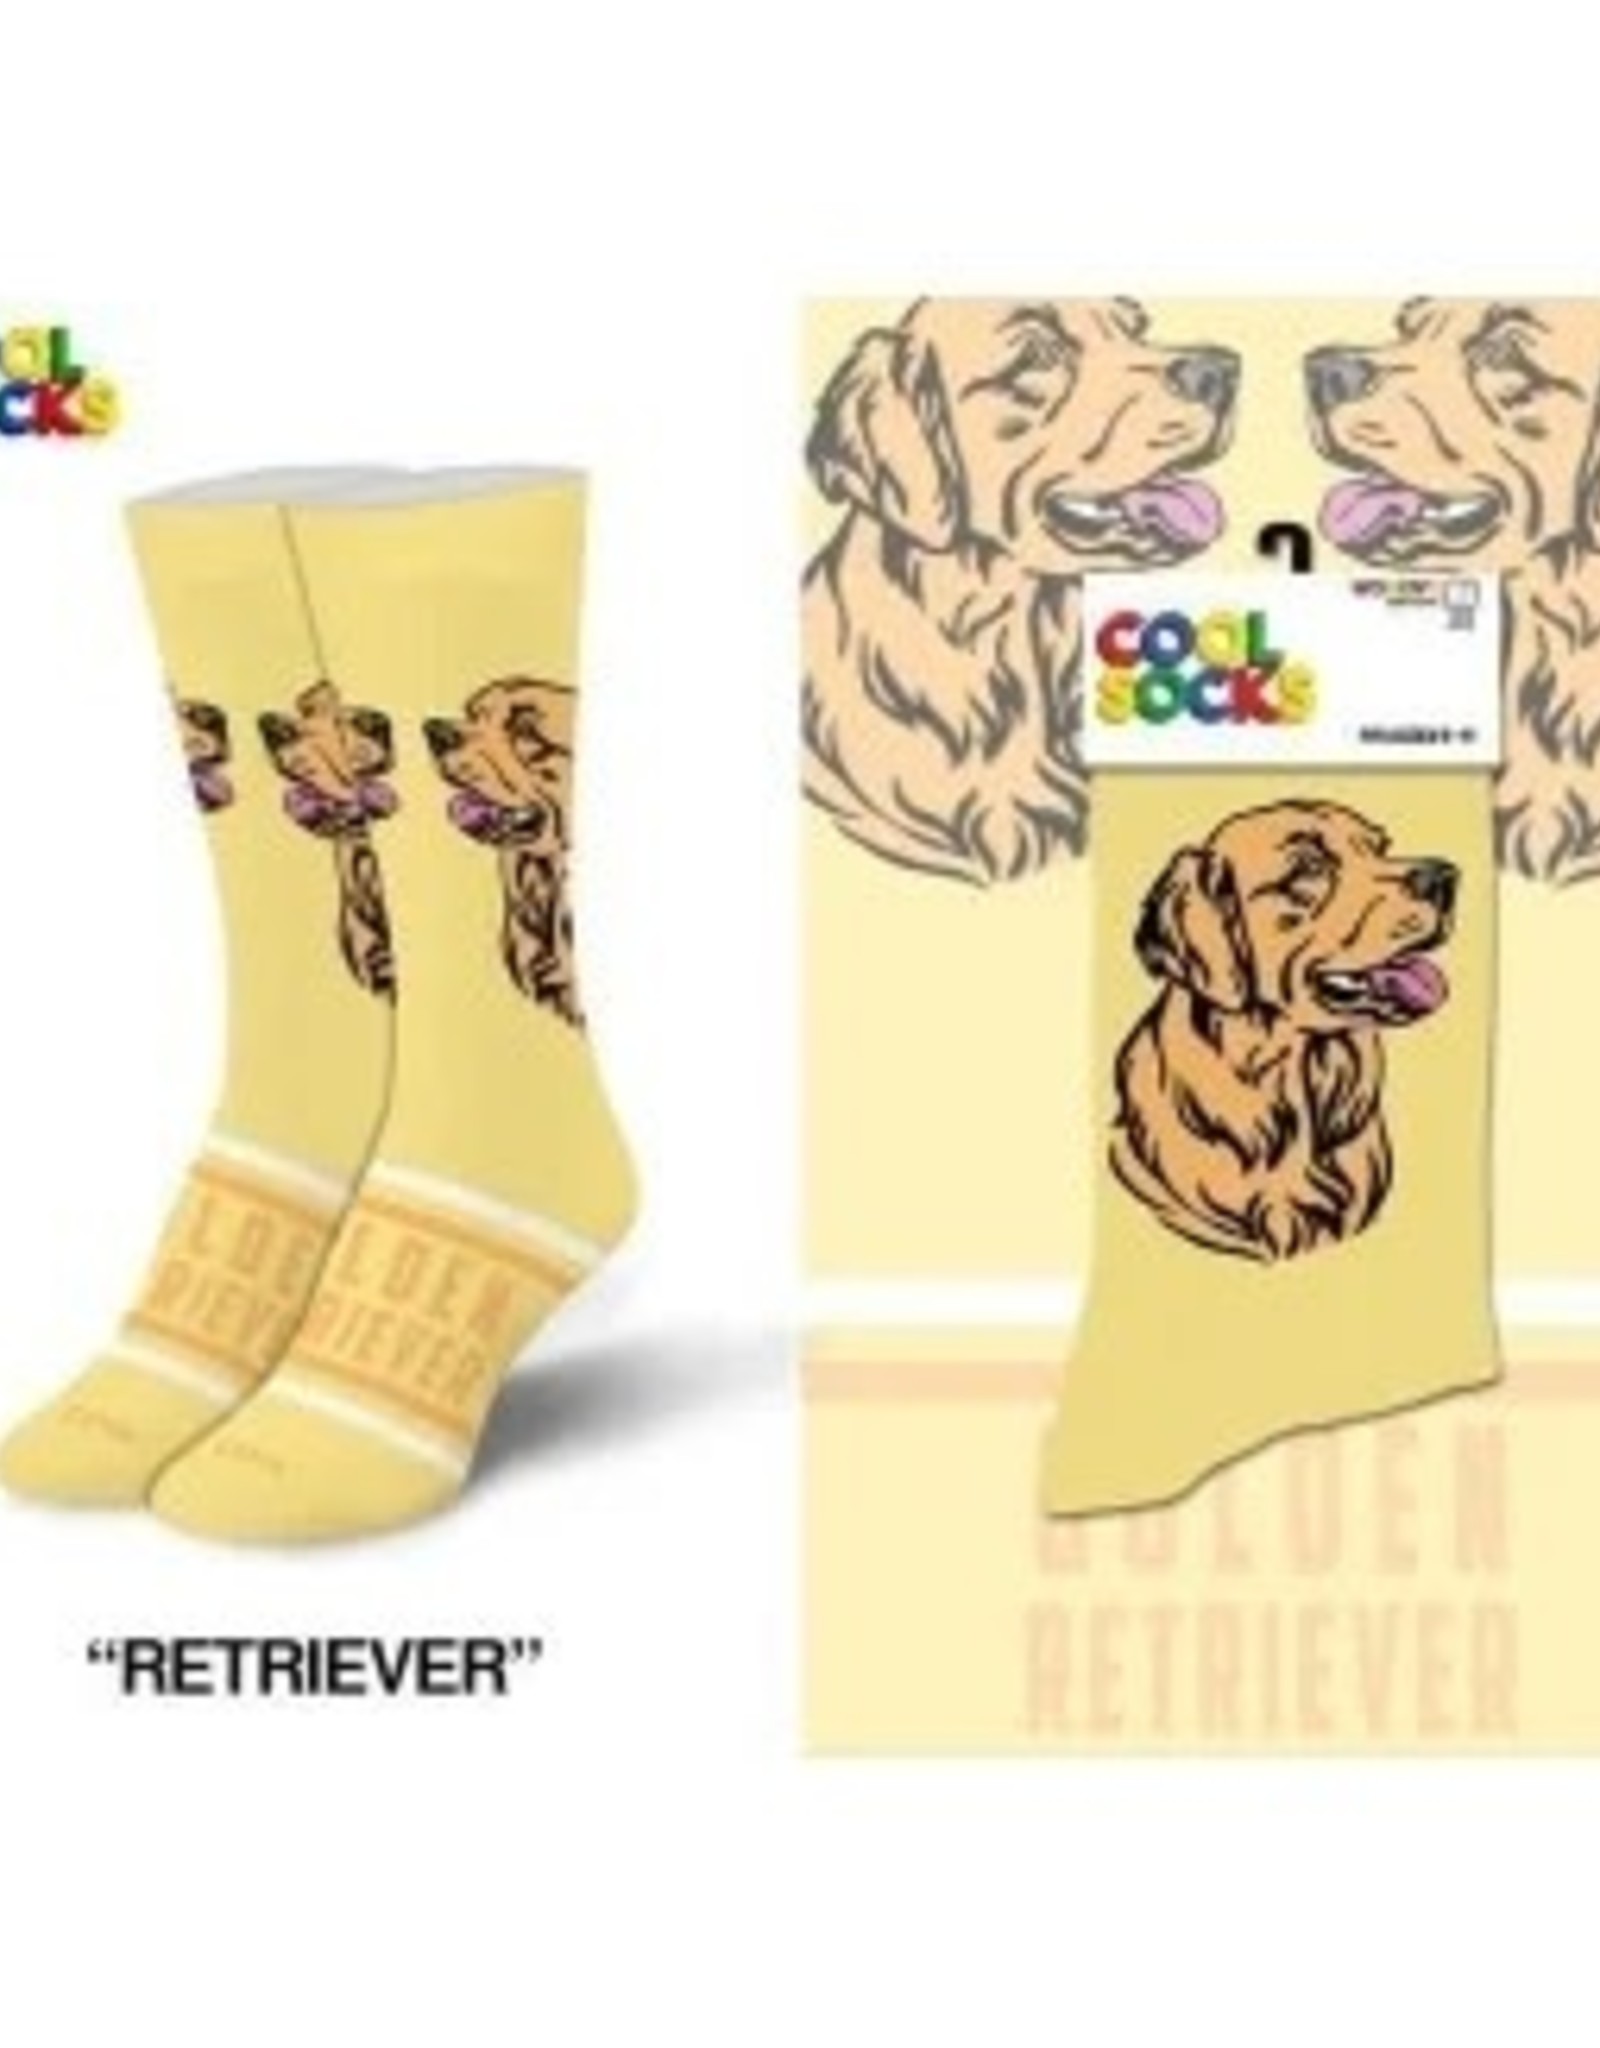 Cool Socks SOCKS/ Golden Retriever